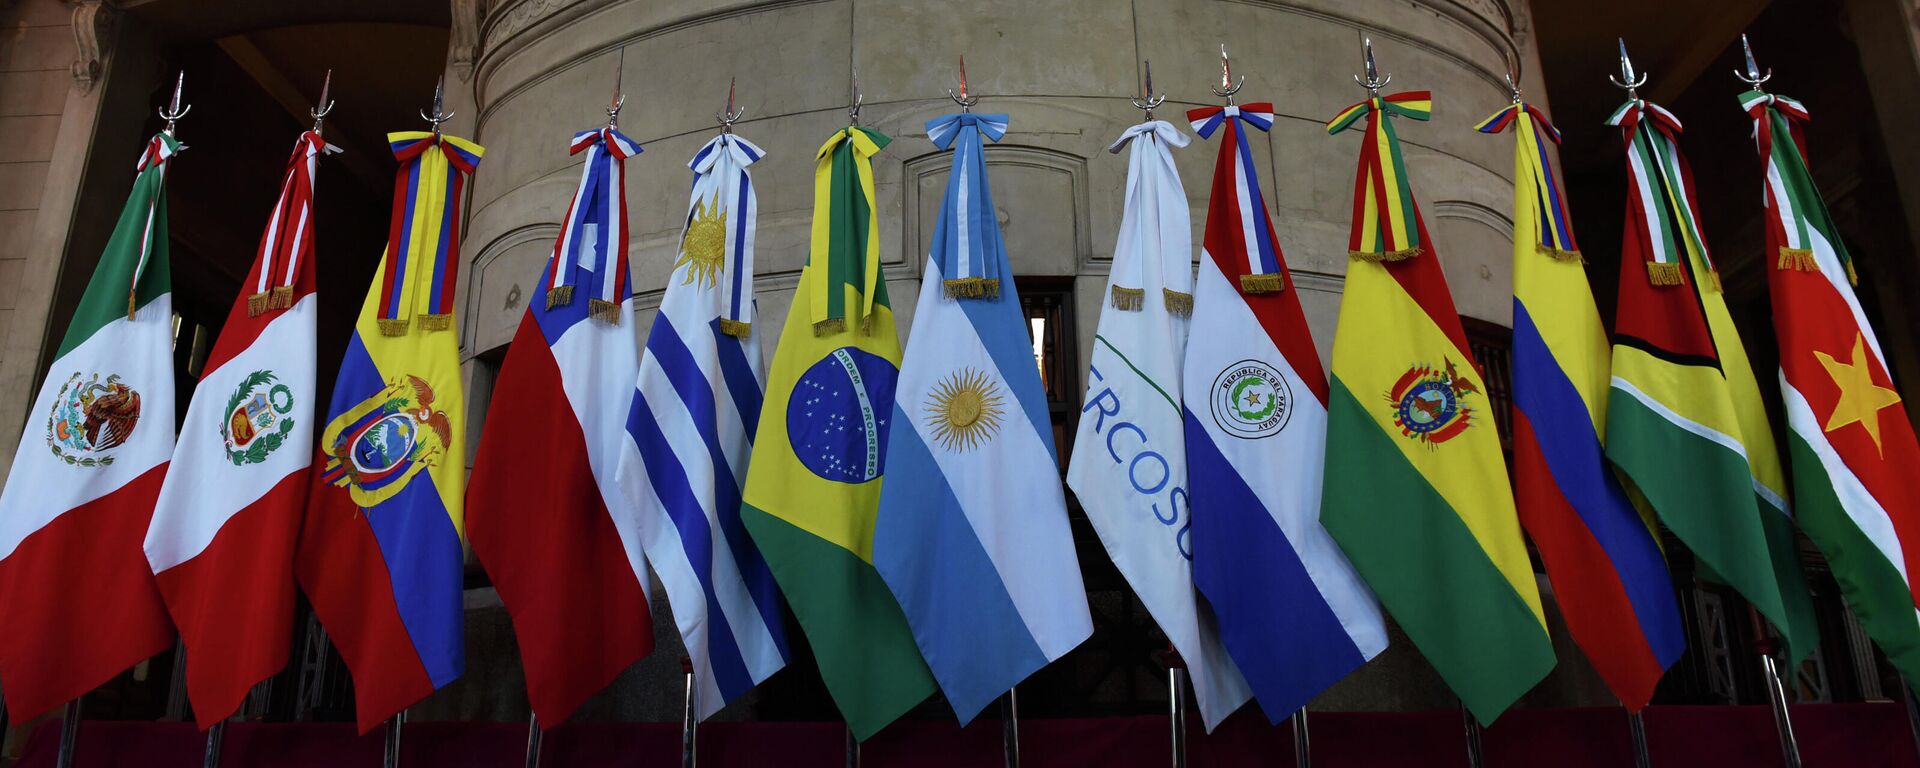 Banderas de miembros del Mercosur y Estados asociados - Sputnik Mundo, 1920, 16.03.2021